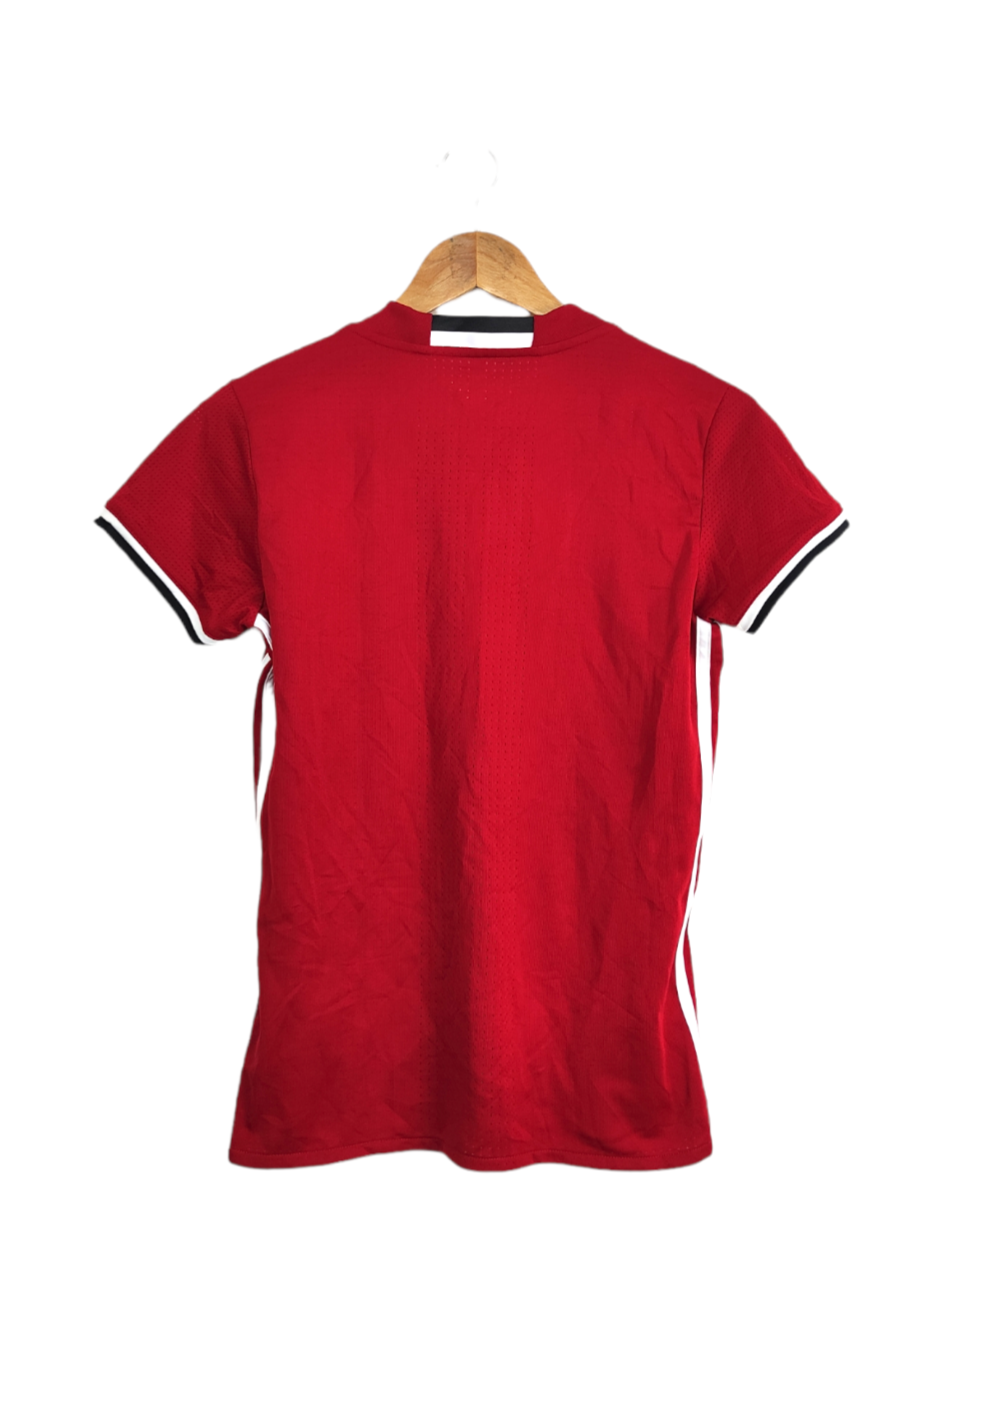 Γυναικεία Αθλητική Μπλούζα - T-Shirt ADIDAS σε Κόκκινο Χρώμα (Small)